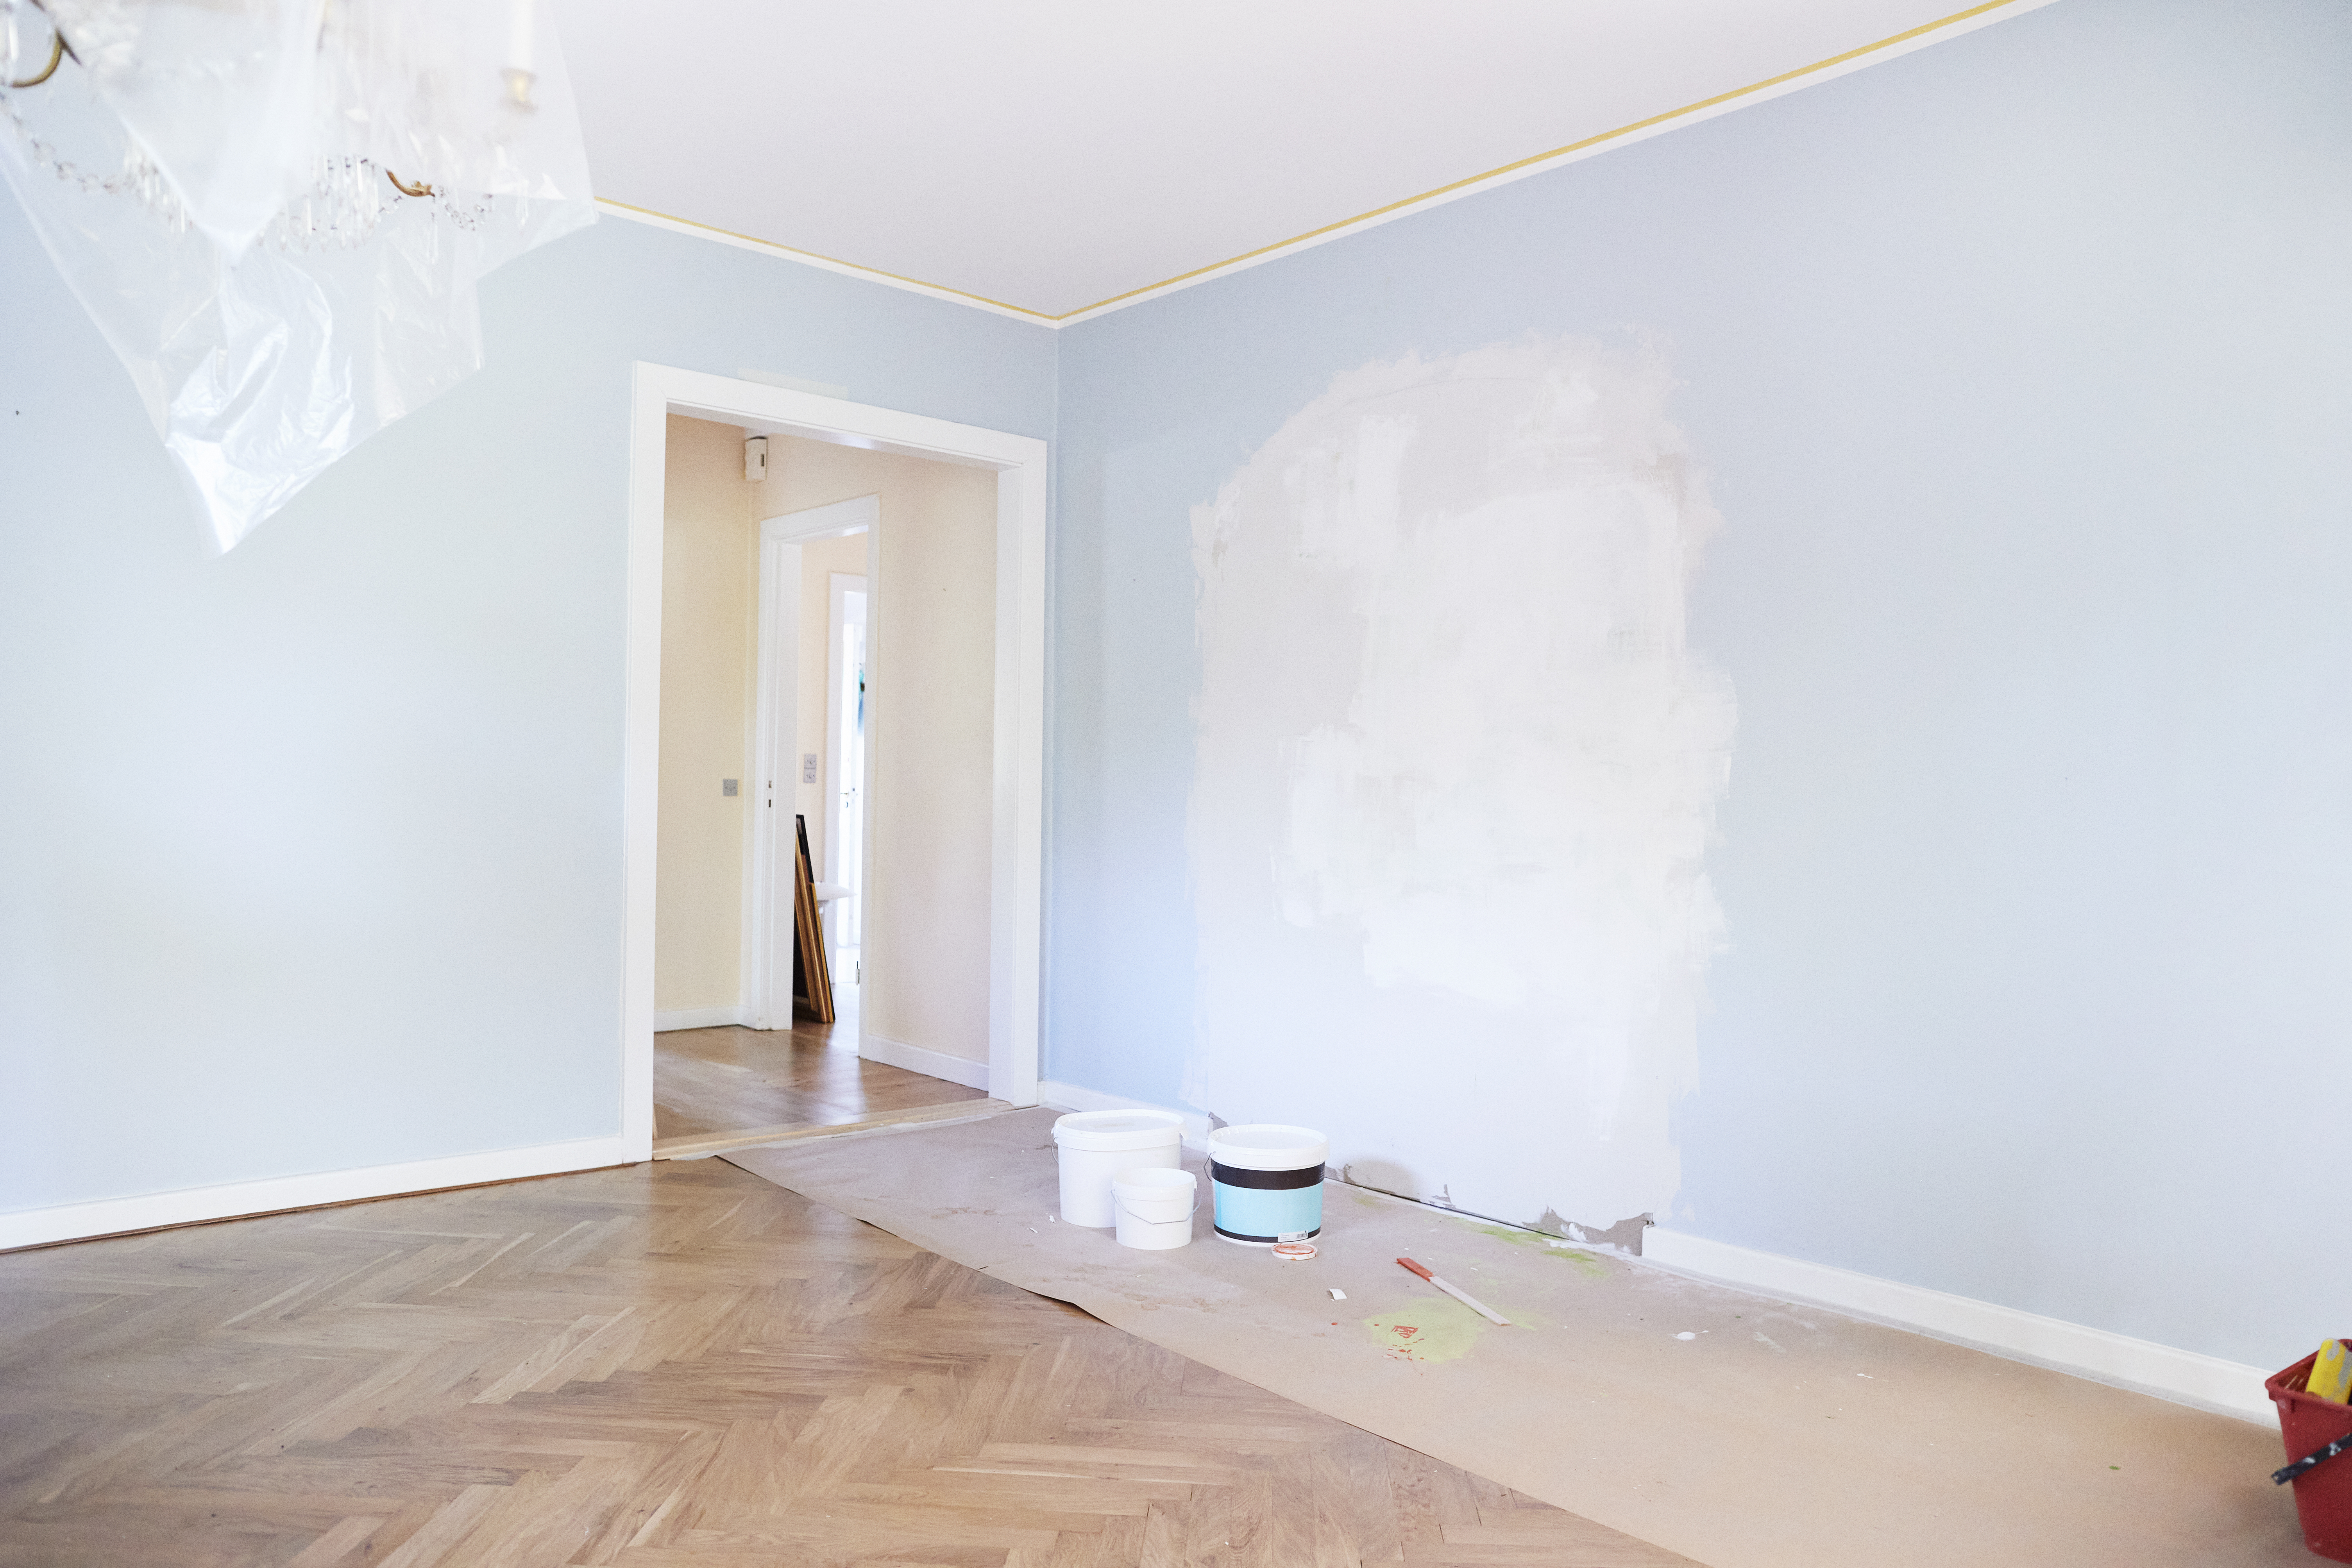 Un salón renovado con las paredes recién pintadas | Foto: Getty Images